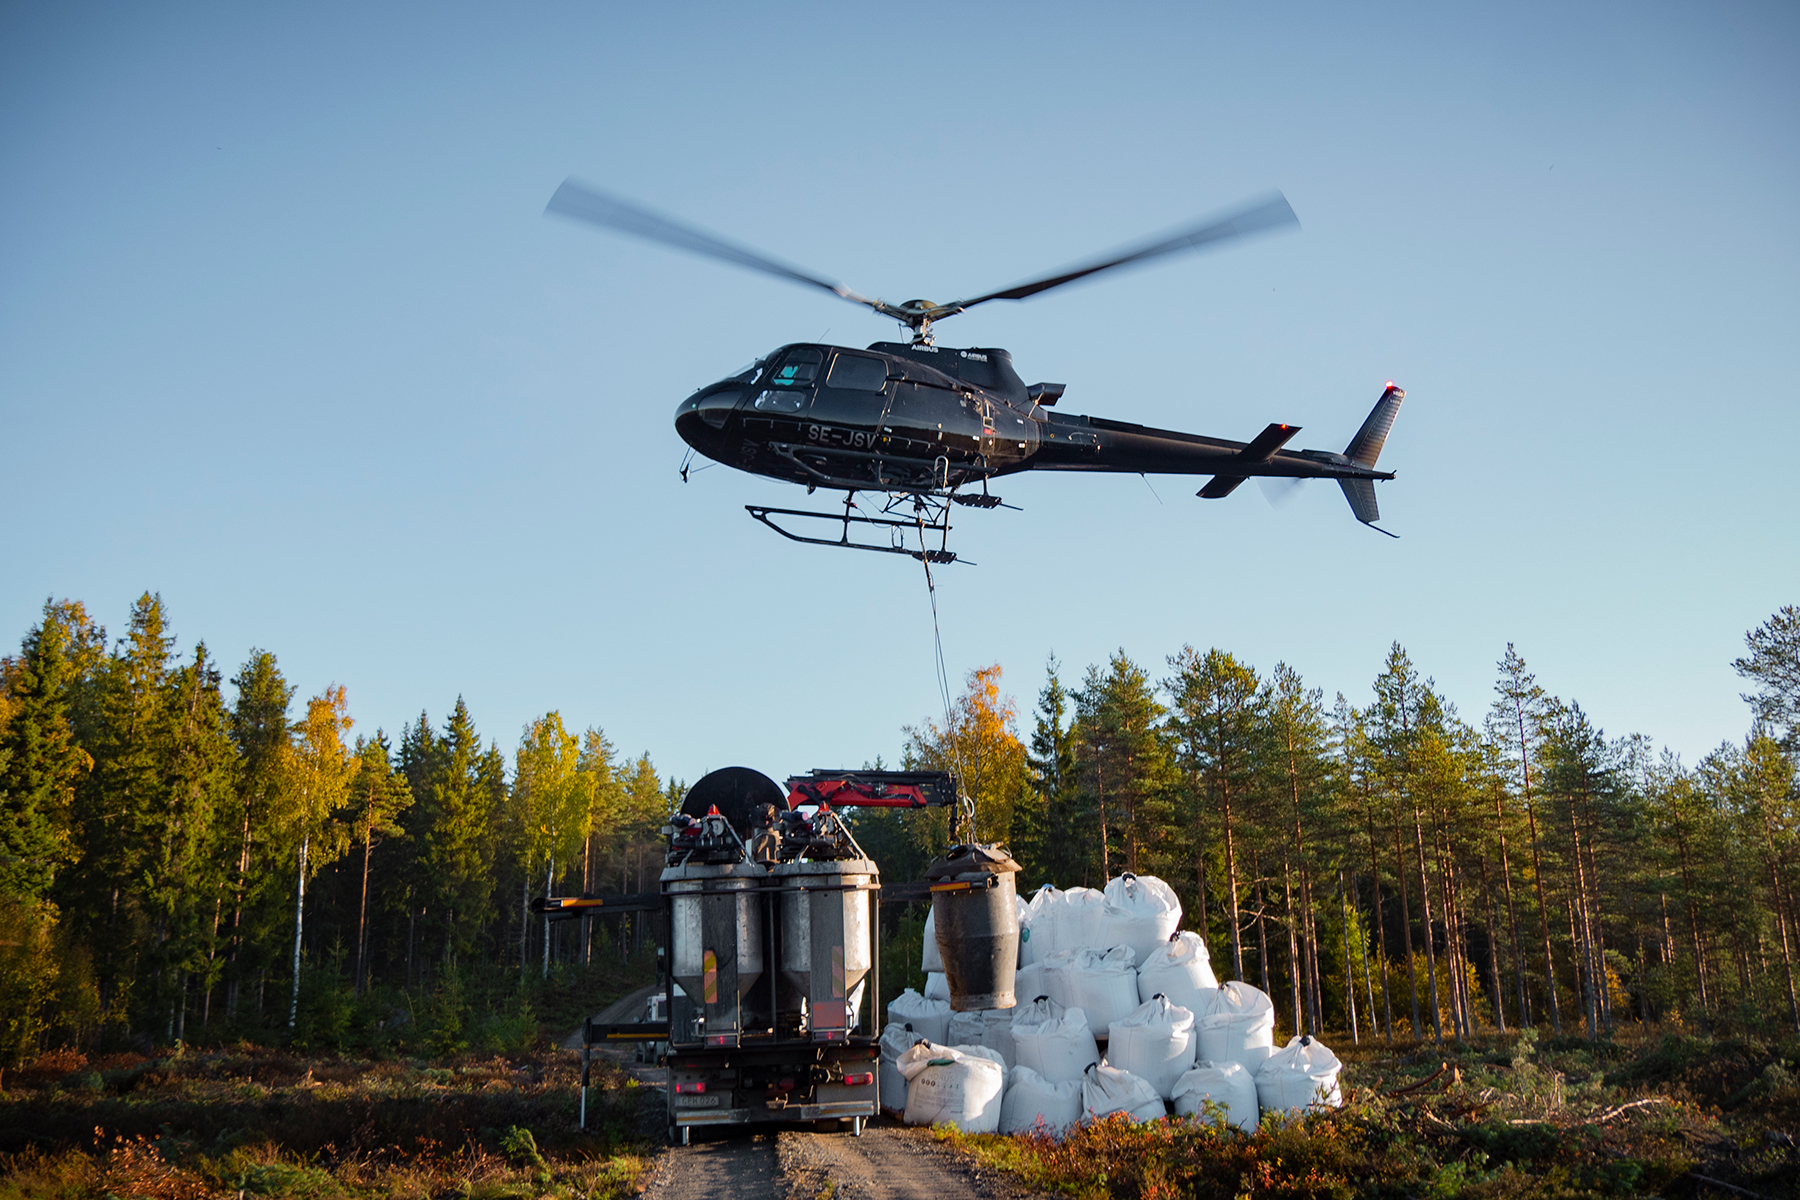 ilmalannoitus-helikopteri-upm-metsa.jpg